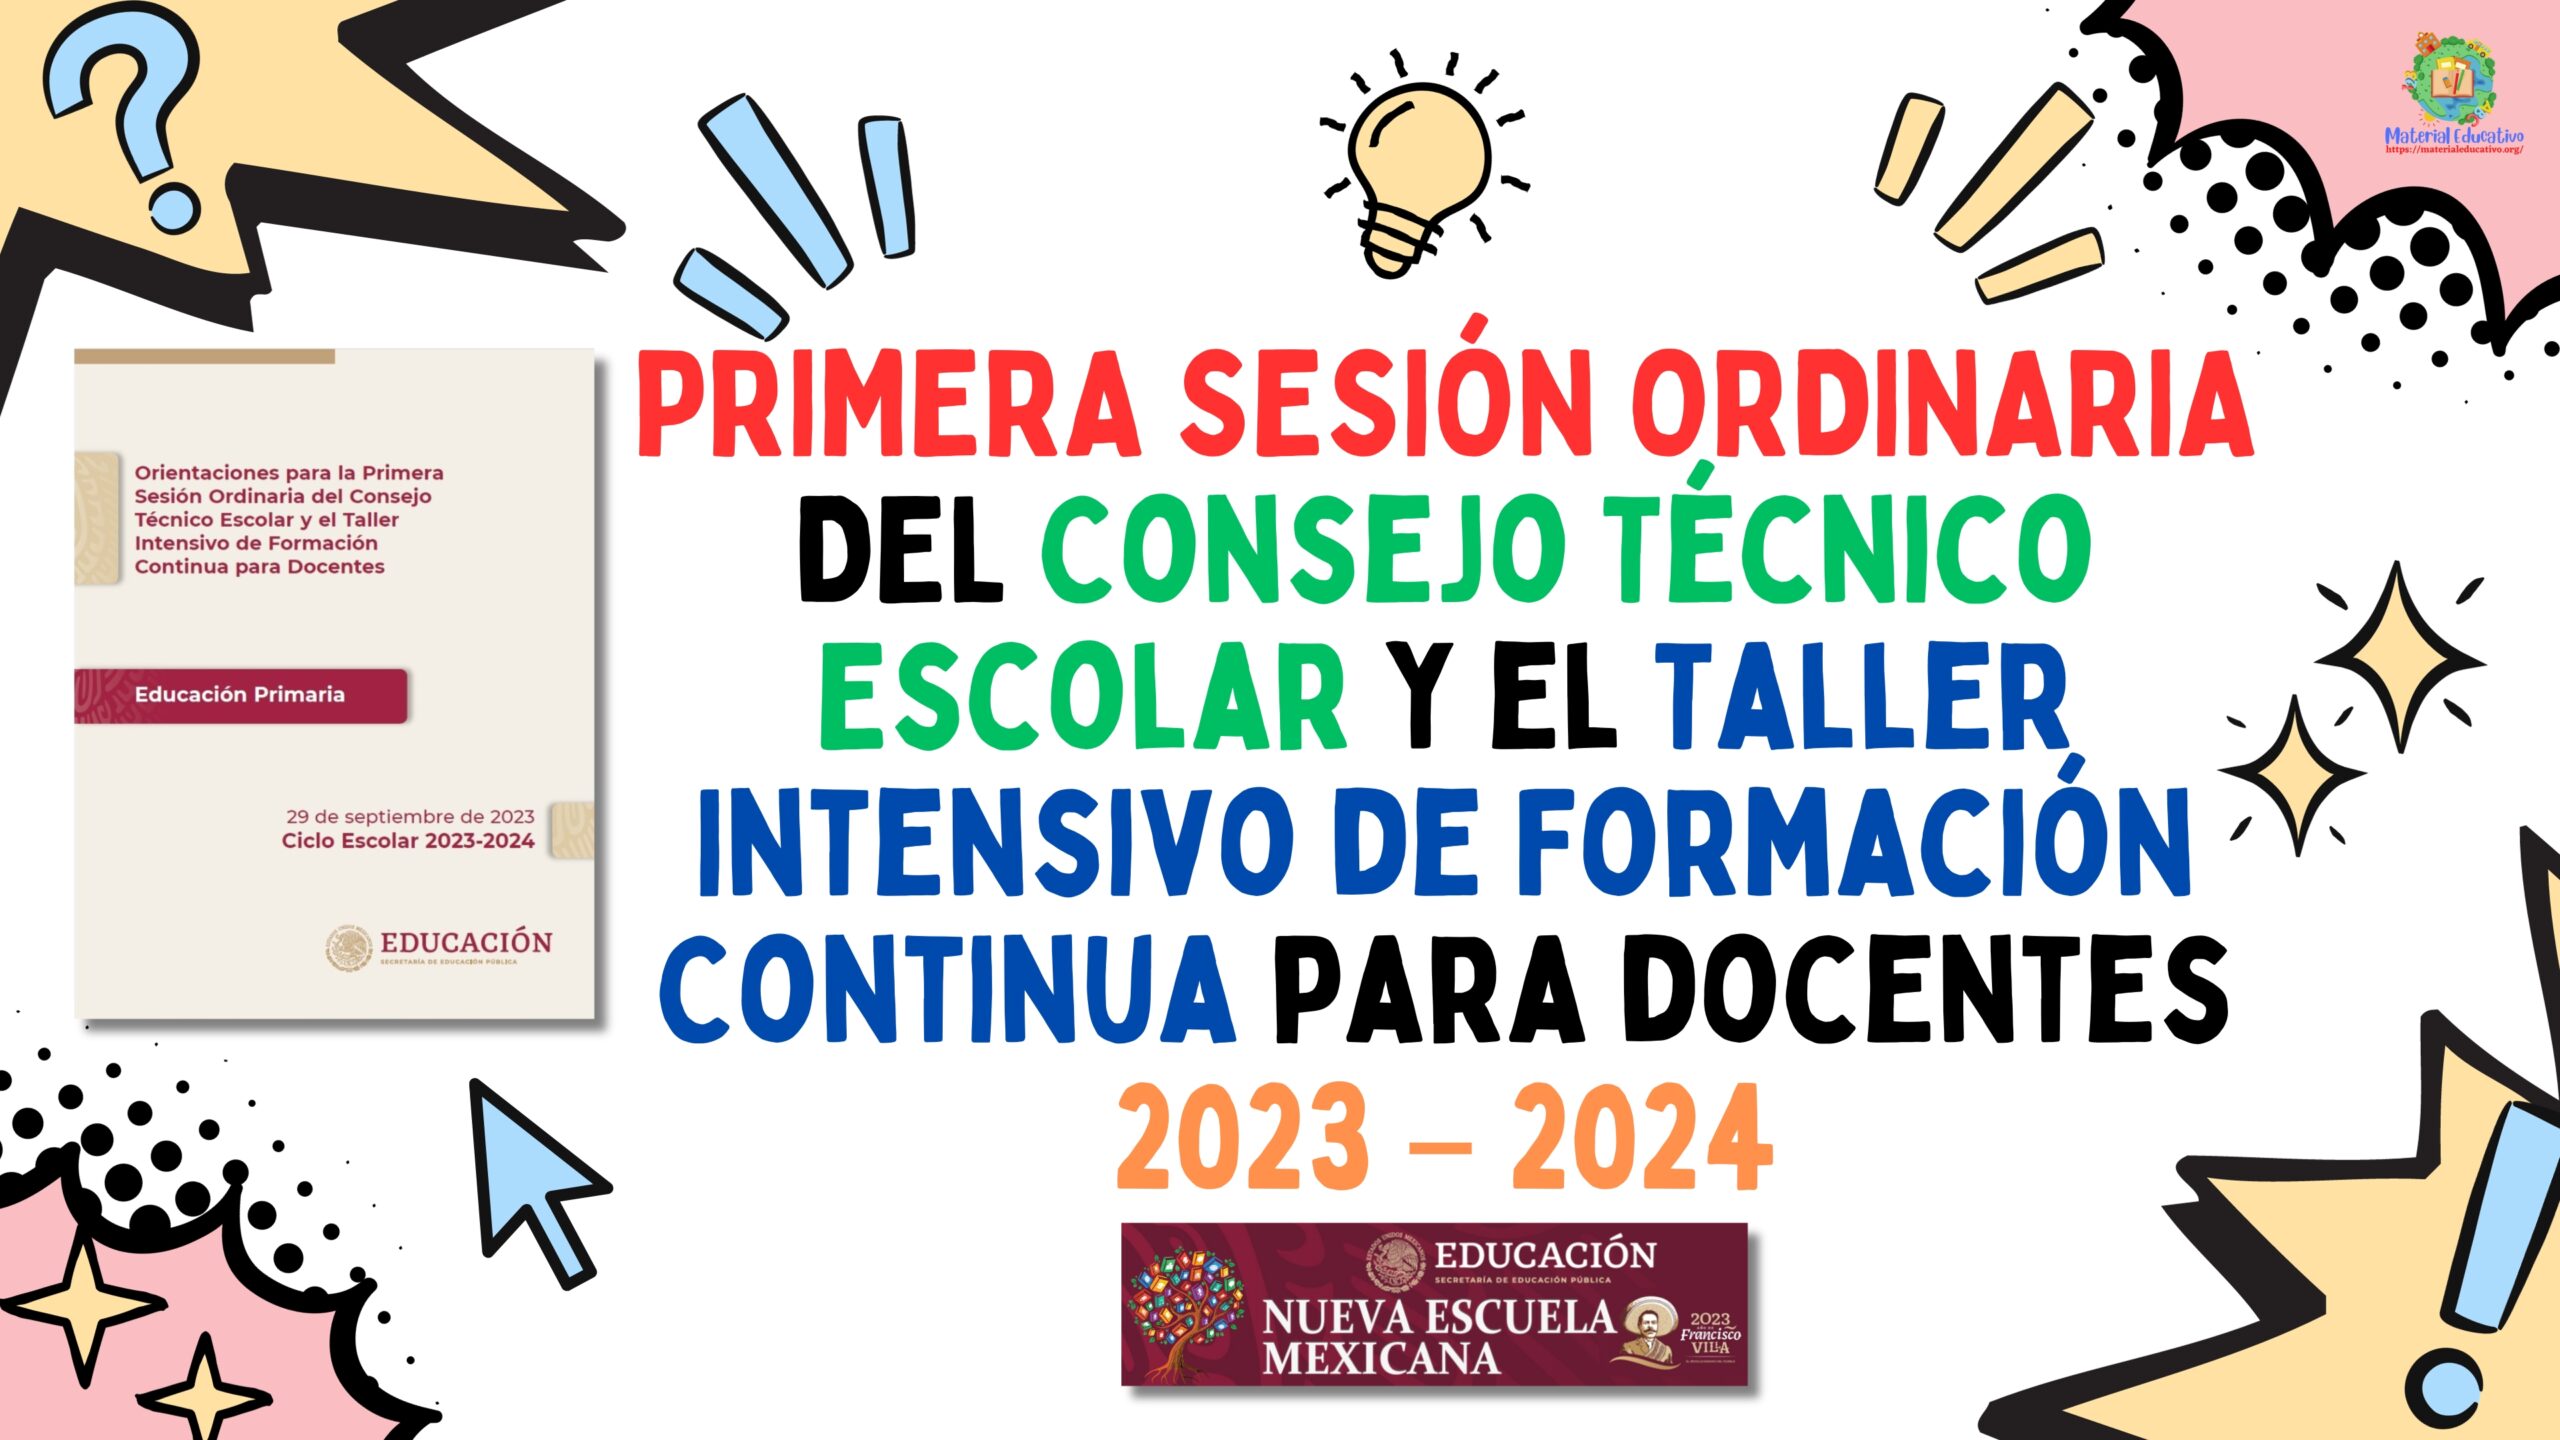 Presentación en PowerPoint y PDF de la Primera Sesión Ordinaria del Consejo Técnico Escolar y el Taller Intensivo de Formación Continua Para Docentes 2023 - 2024